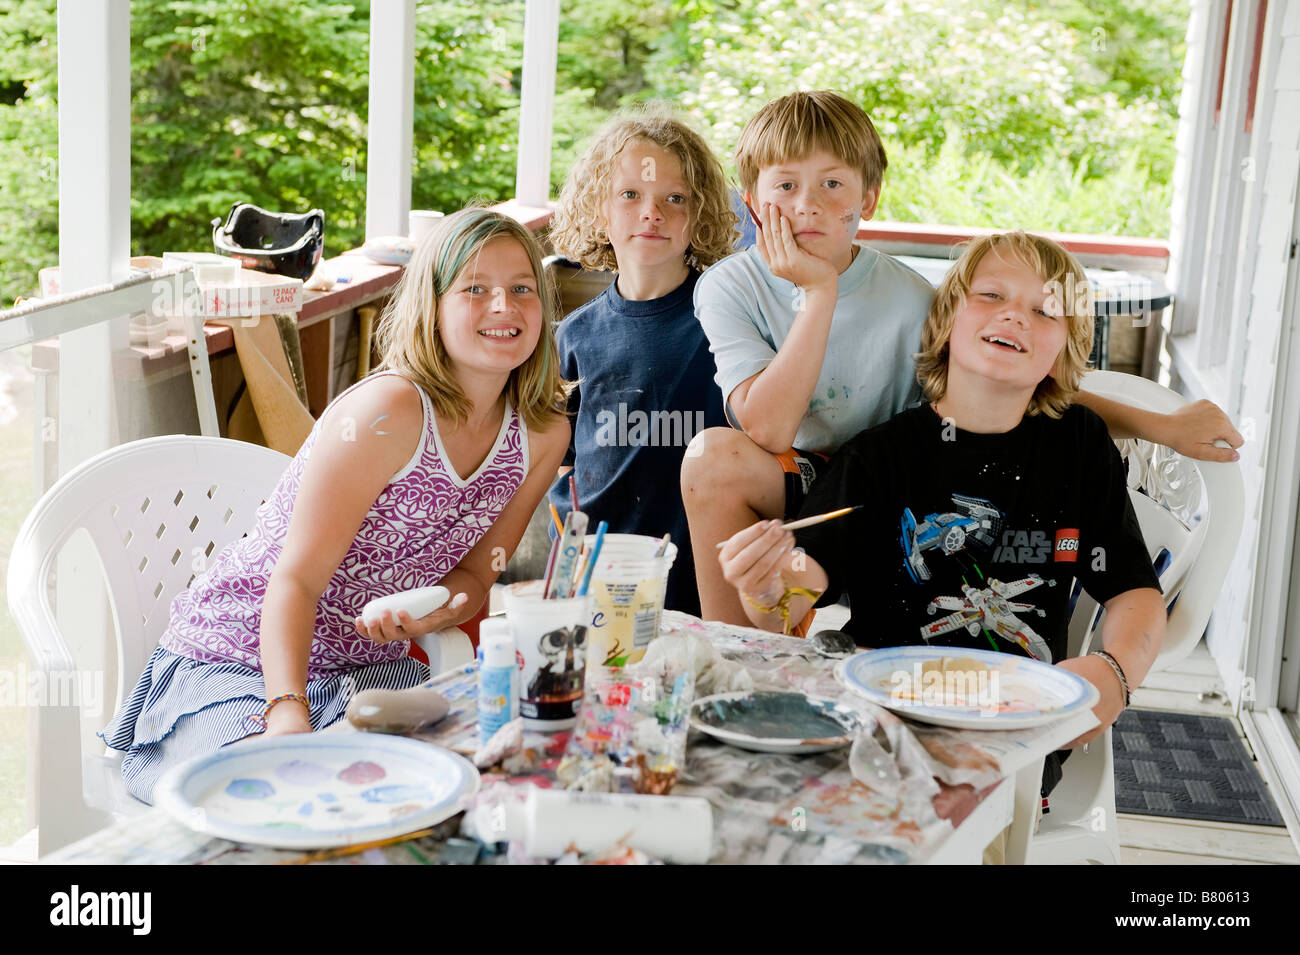 Un portrait de quatre amis d'enfance à proximité. Banque D'Images